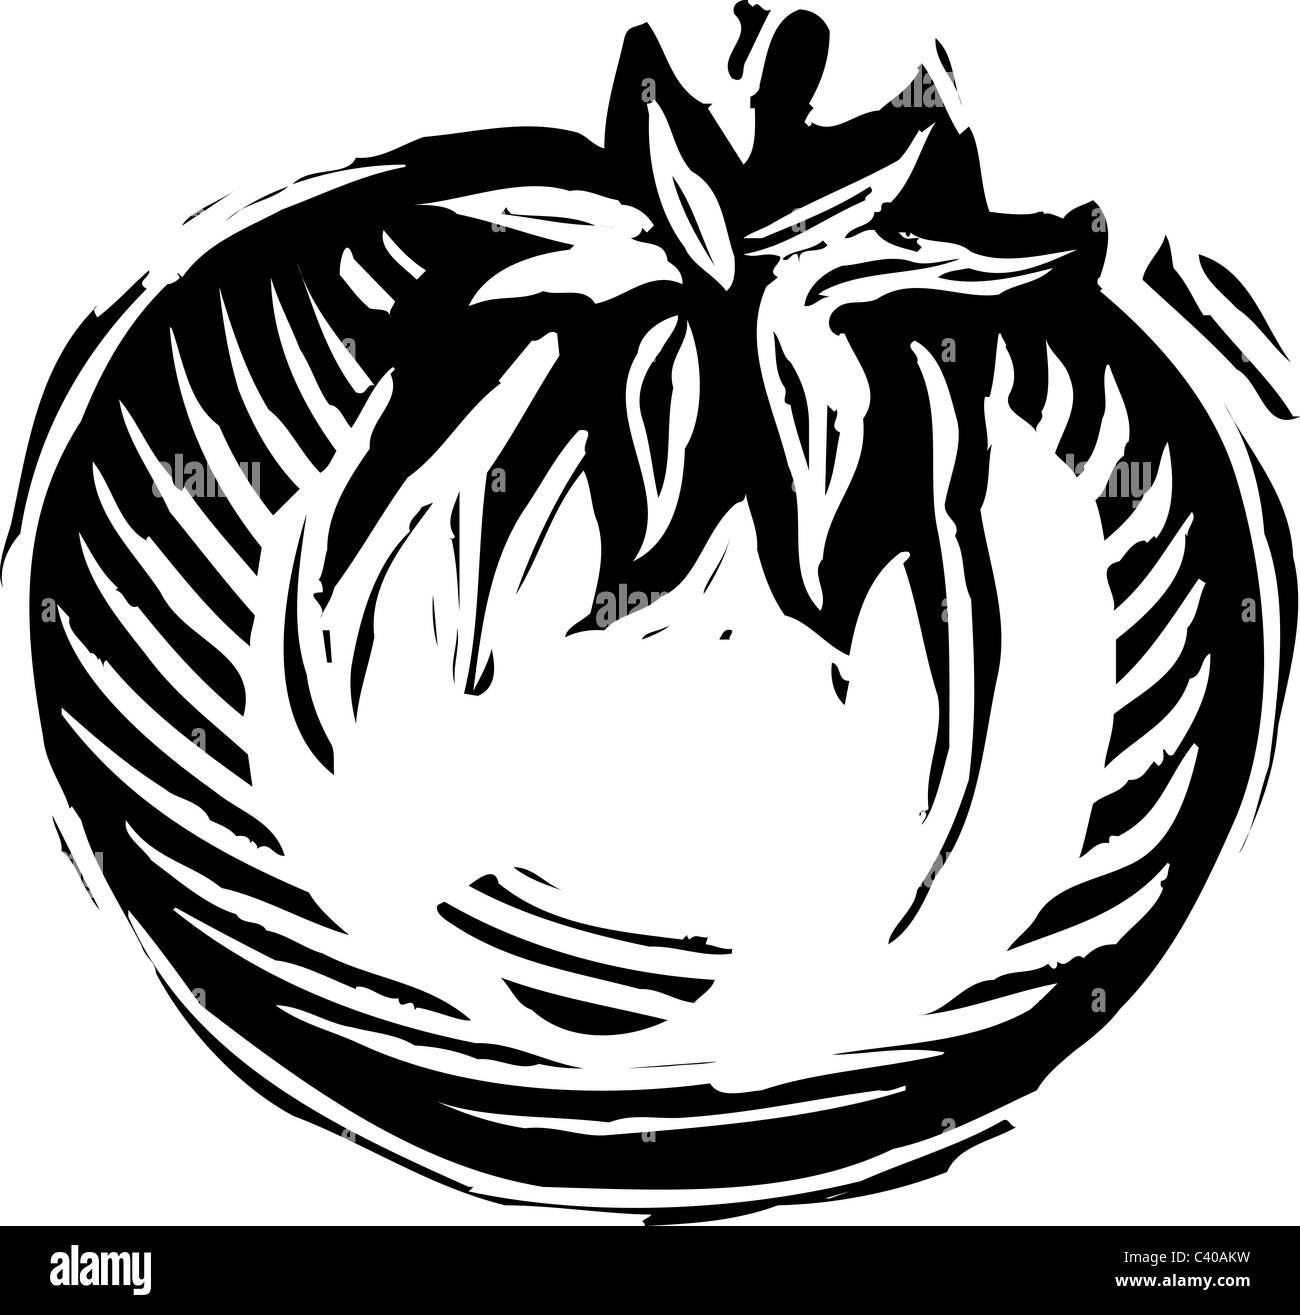 Illustrazione di un bianco e nero il pomodoro Foto Stock